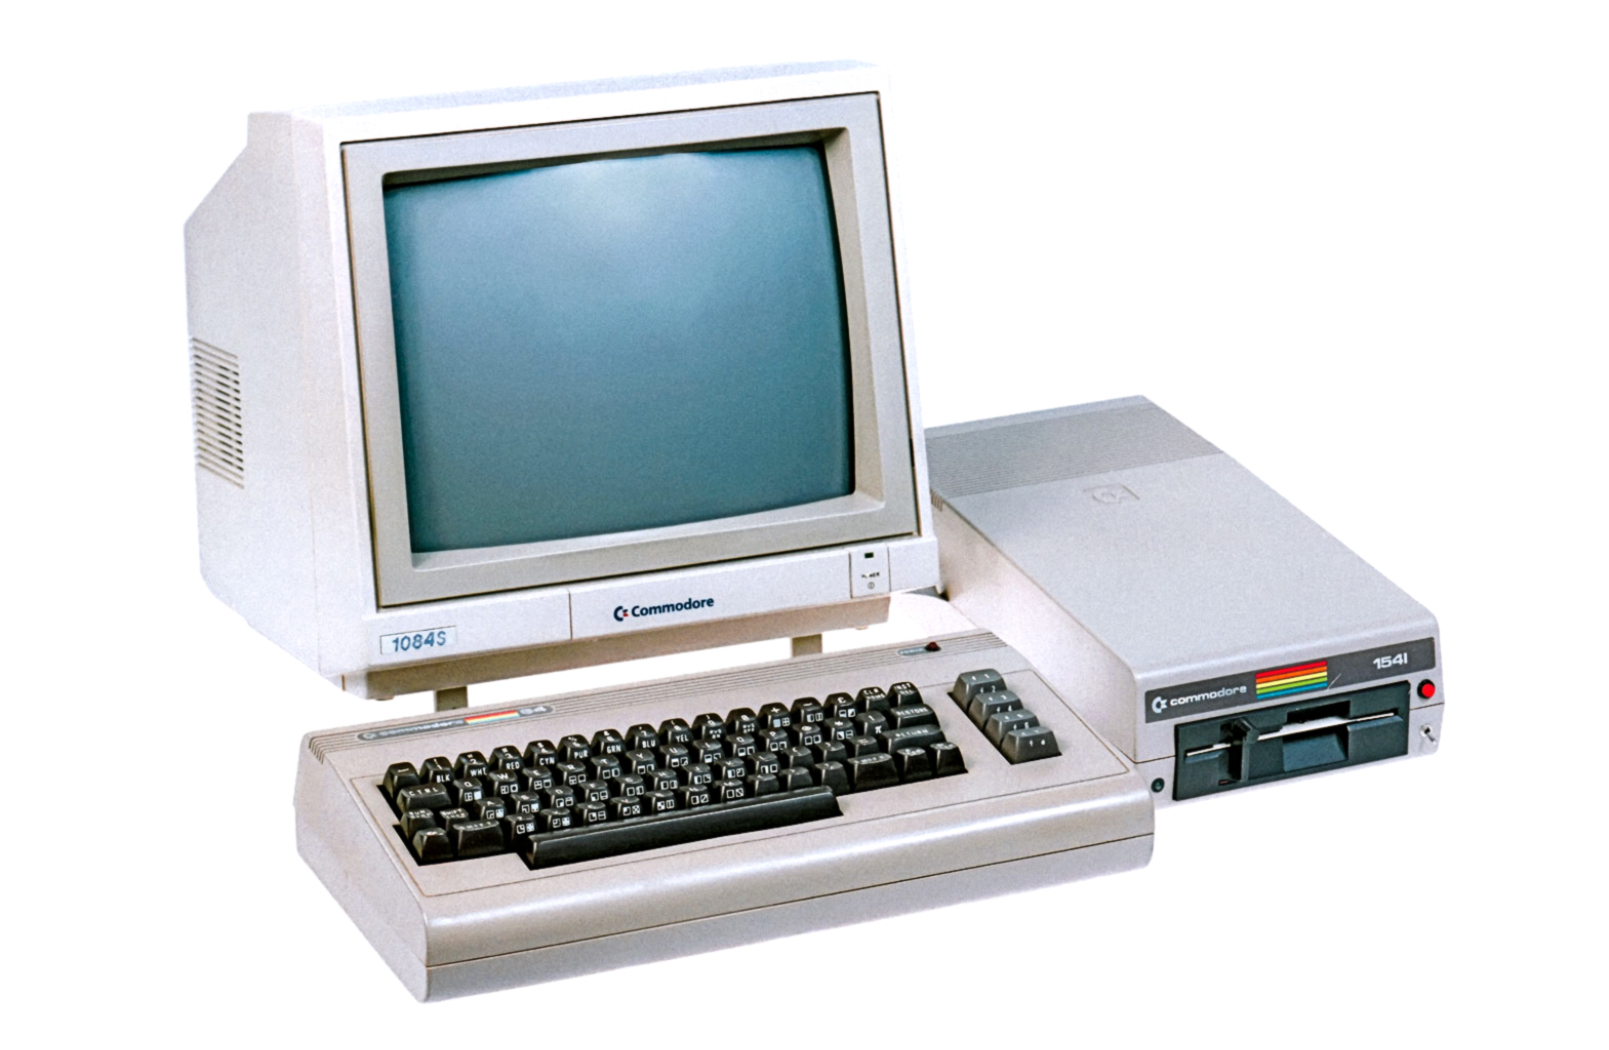 Качество персональных компьютеров. Монитор Commodore 64. Компьютер Атари 1984 год. ЭВМ «Commodore Vic-20». Commodore 1084s.